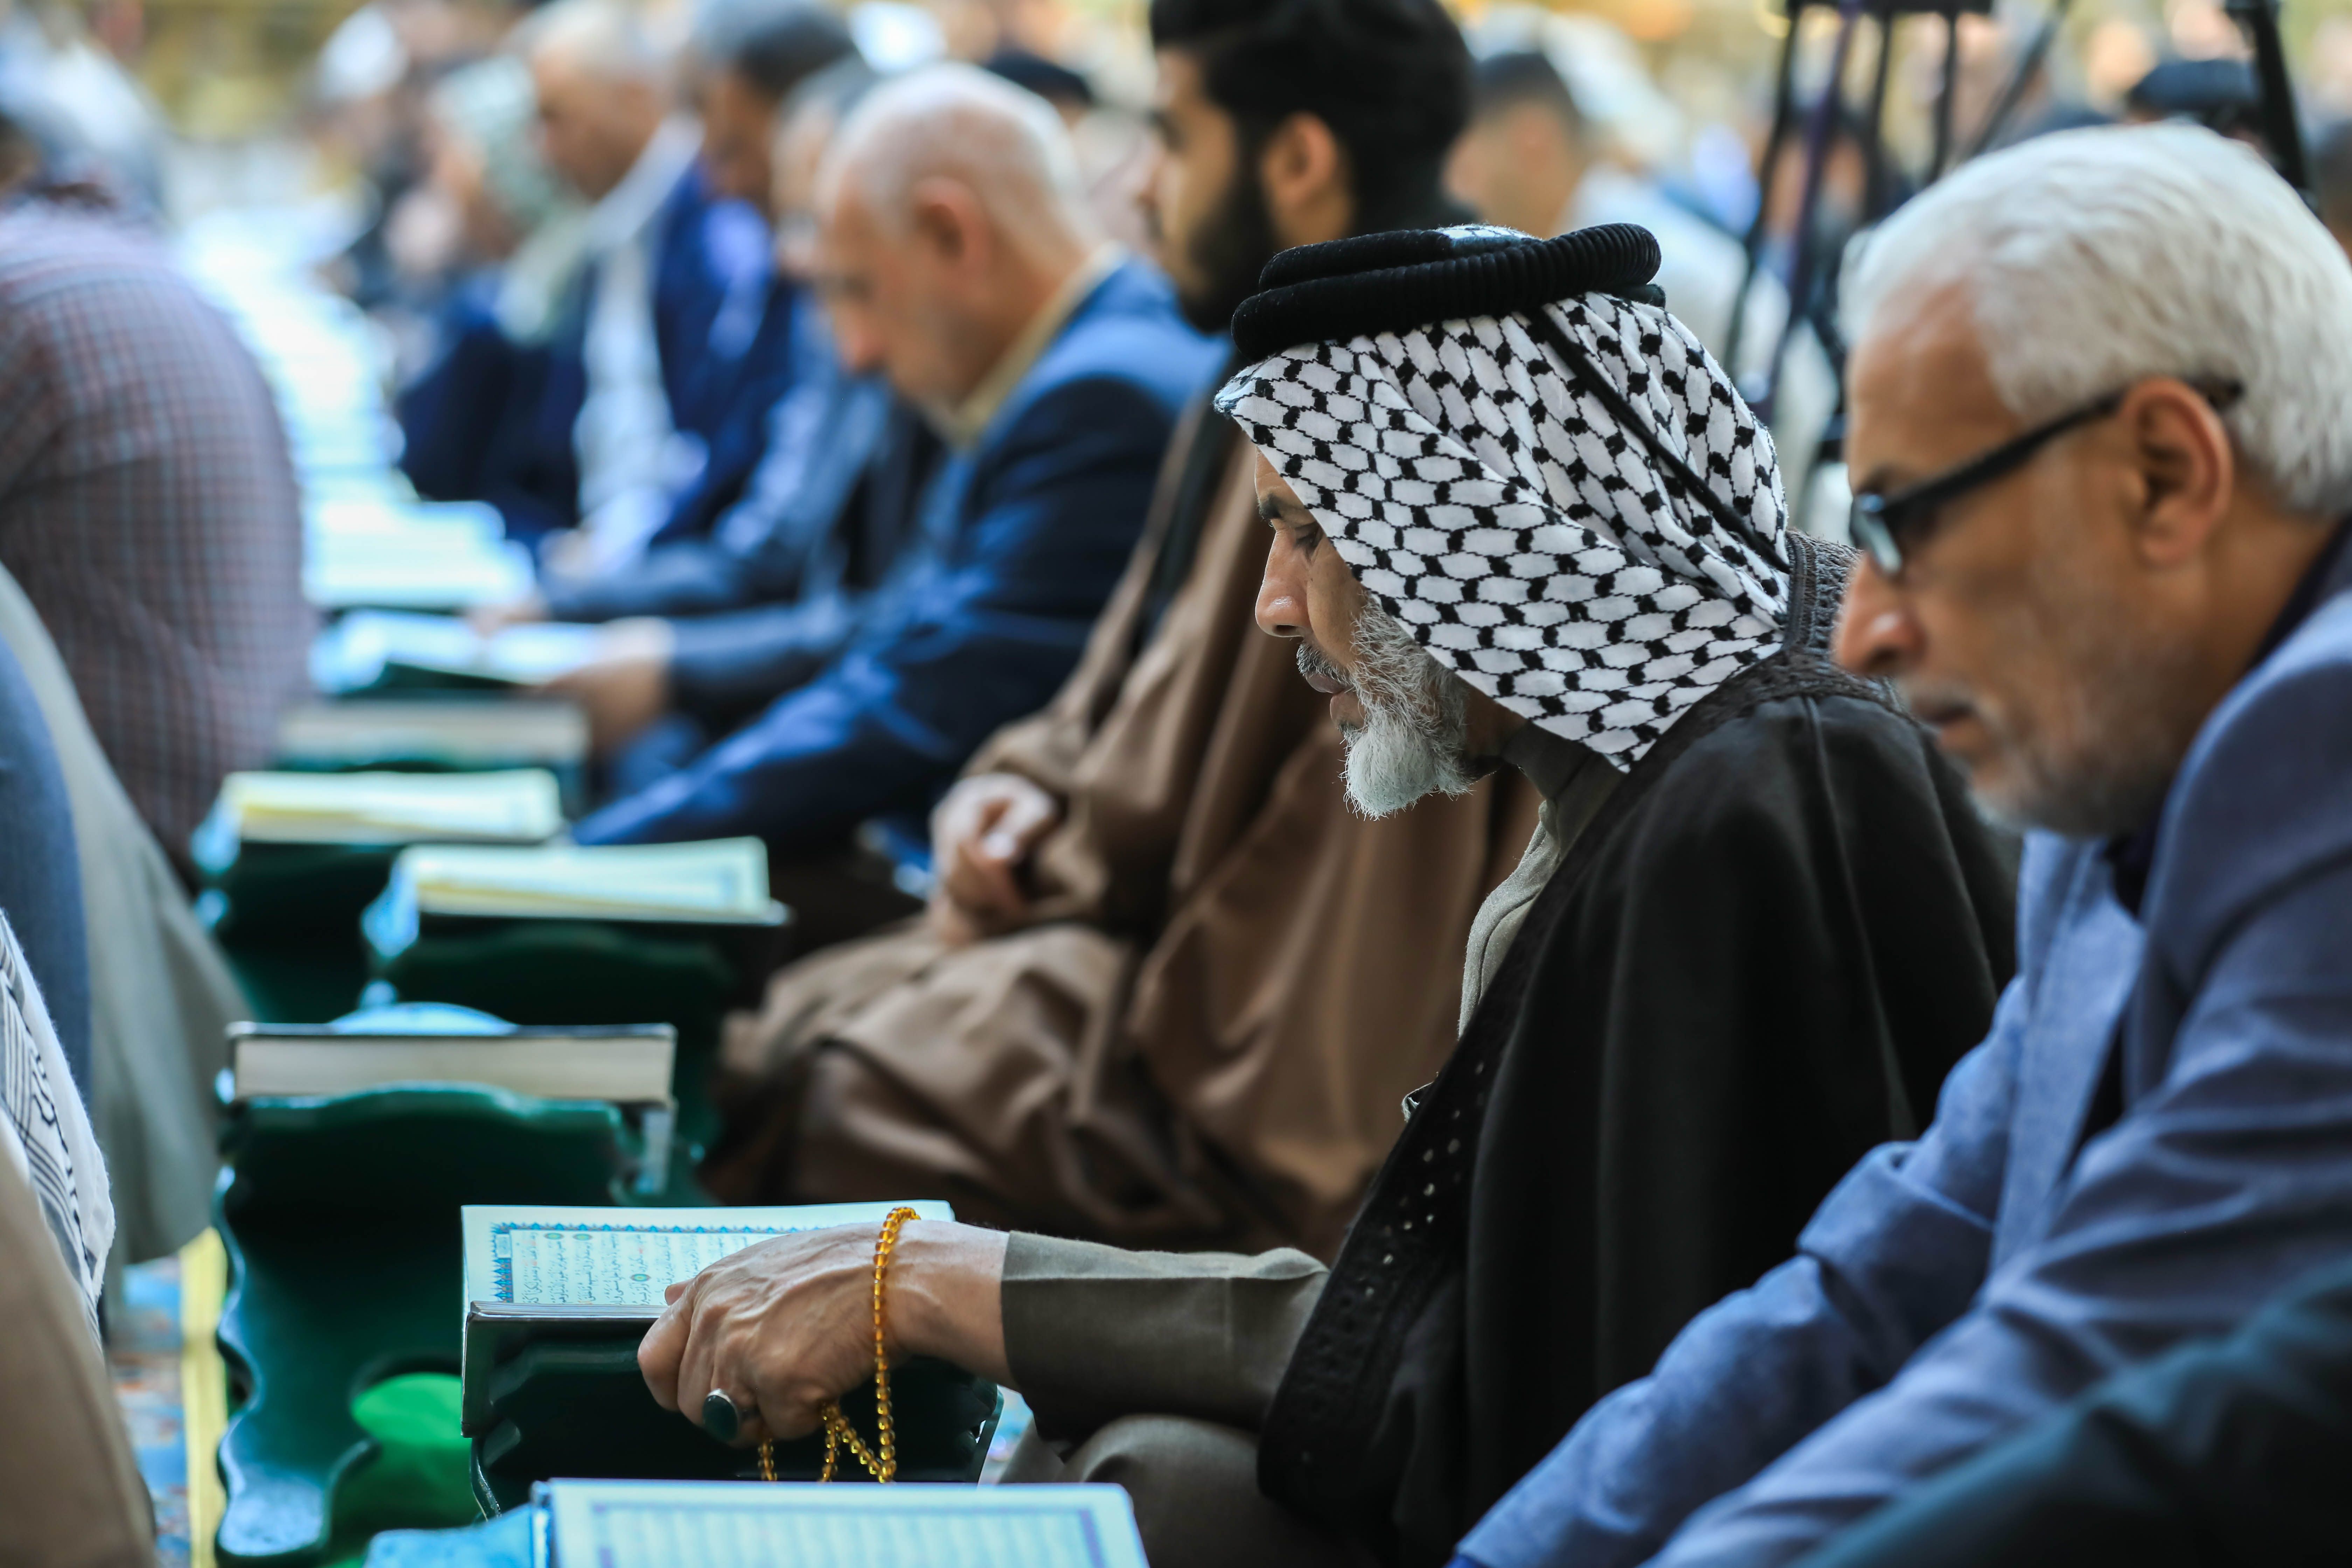 الصحن العباسي المطهر يحتضن محفلاً قرآنيًا احتفاءً بتخرج  ٤٠٠ طالب من طلبة الدورات القرآنية في بغداد